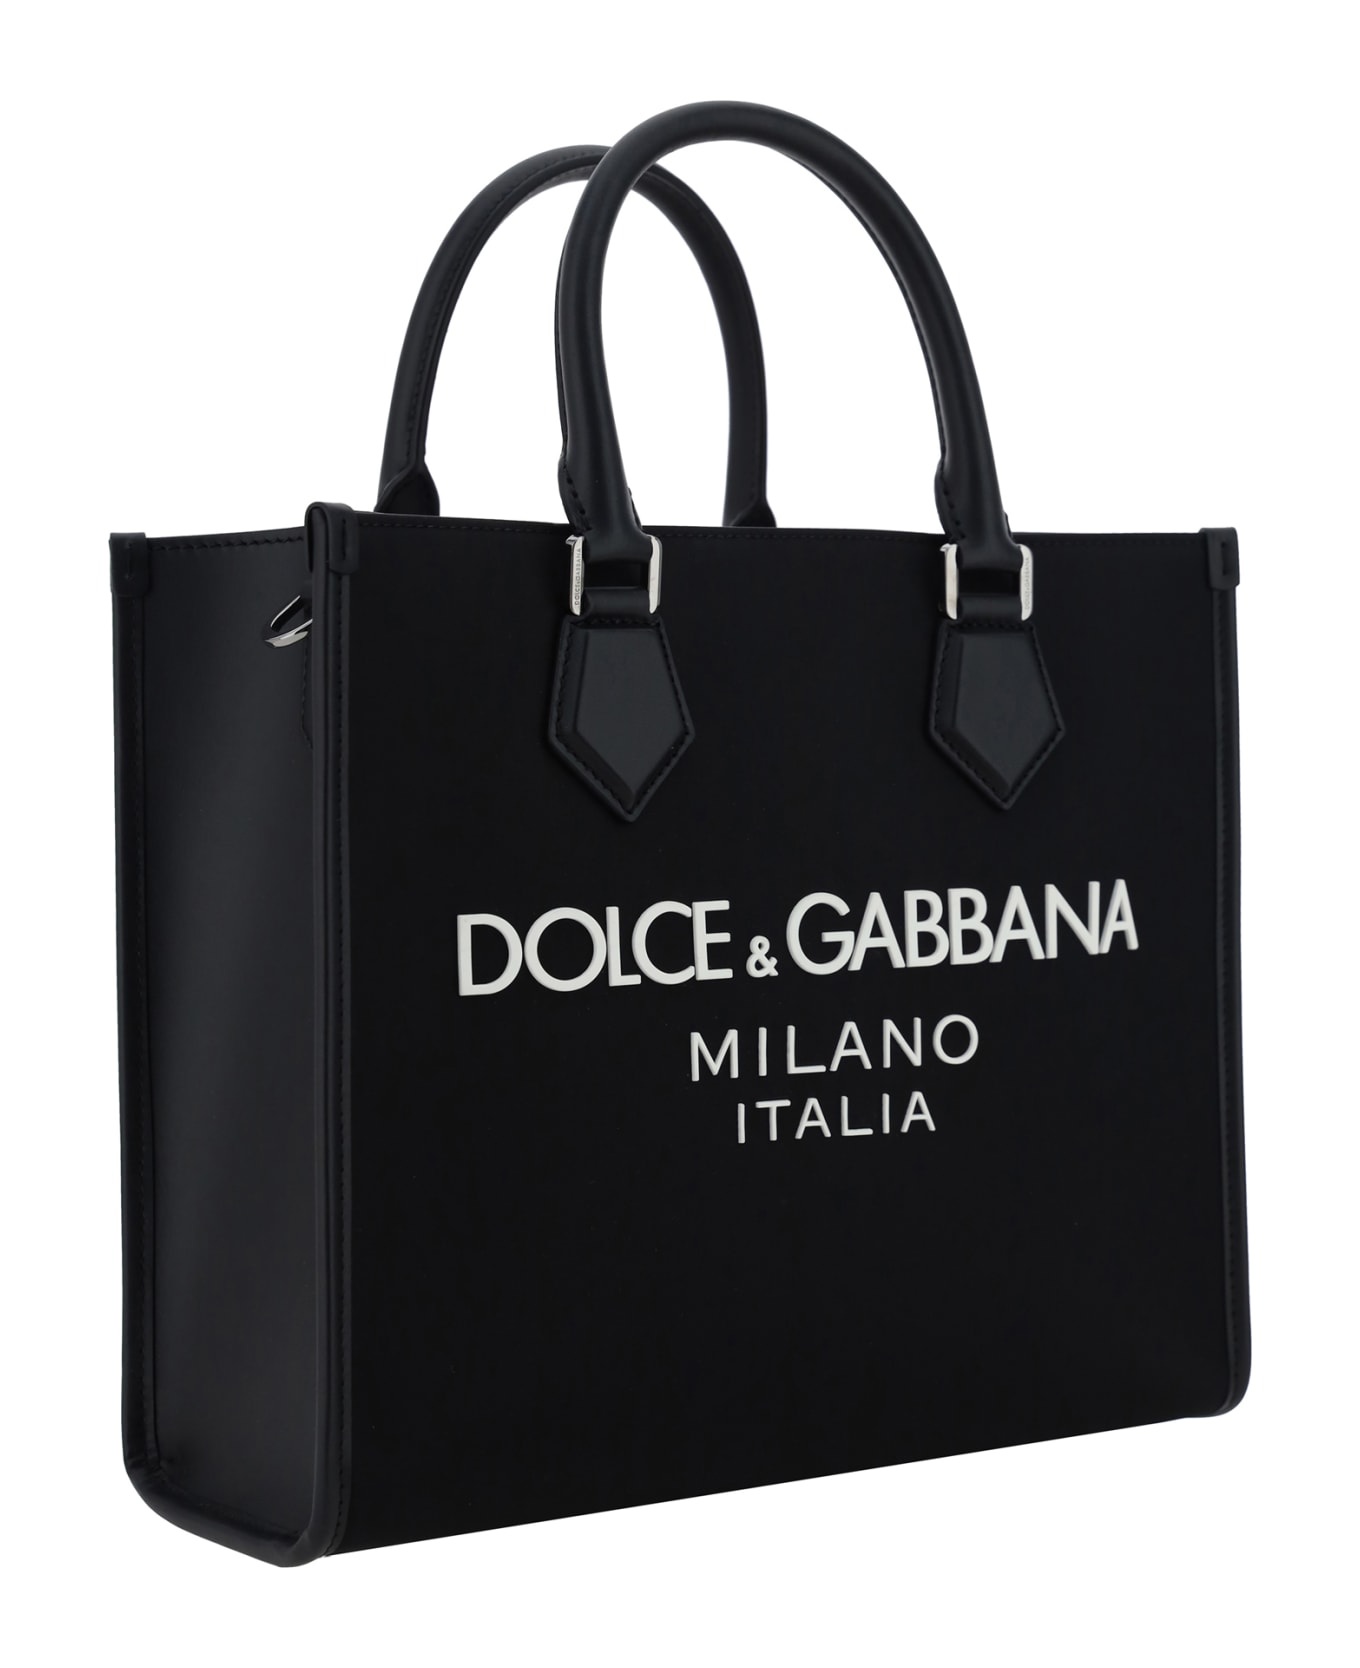 Dolce & Gabbana Nylon Small Tote Bag - Nero/nero